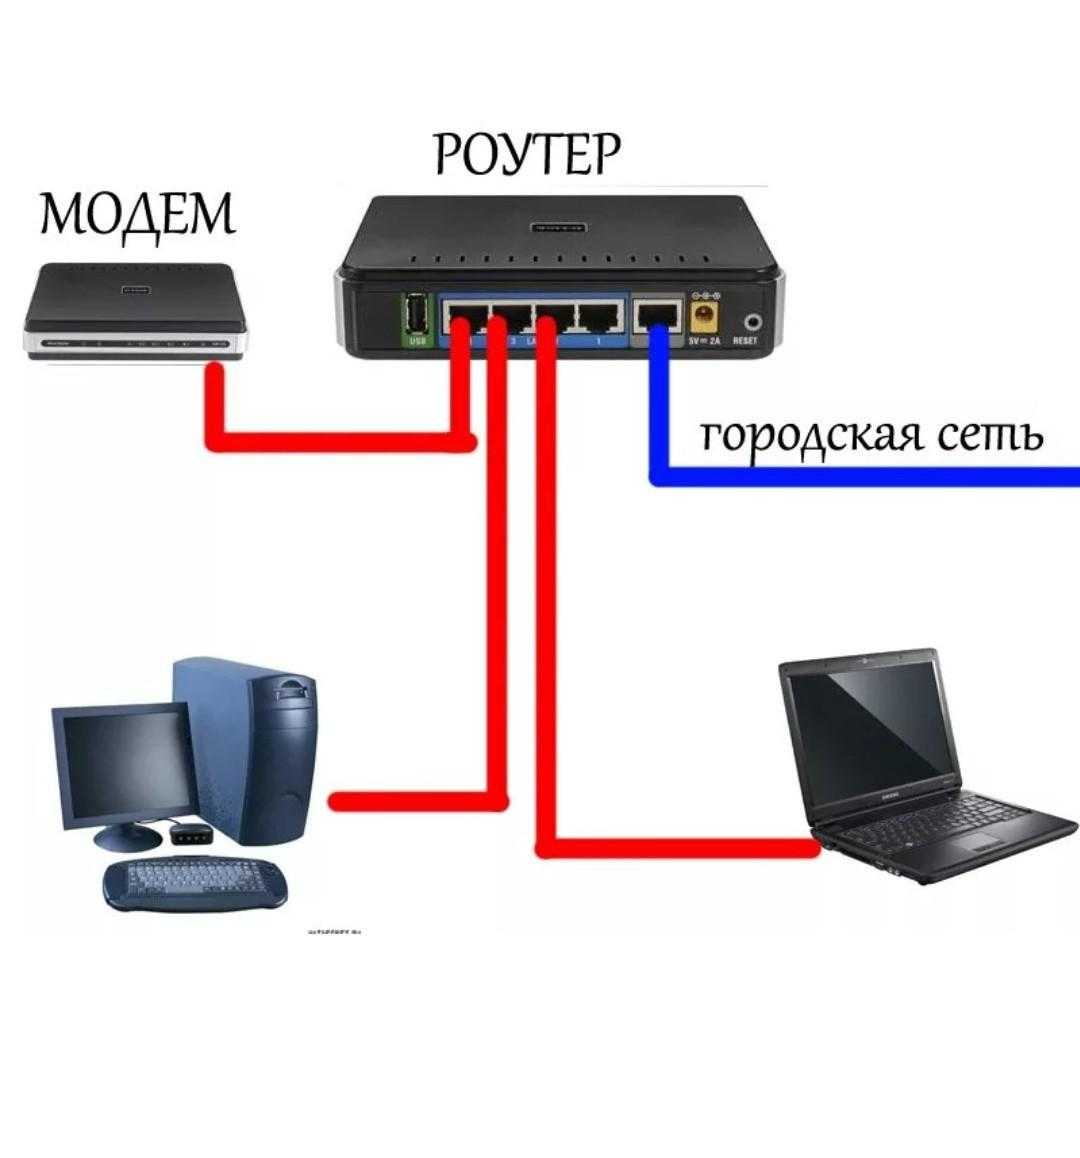 Соединение через роутер. Как подключается модем к компьютеру. Схема подключения модема. Как подключить второй компьютер к интернету через кабель к роутеру. Провод для подключения модема к роутеру.